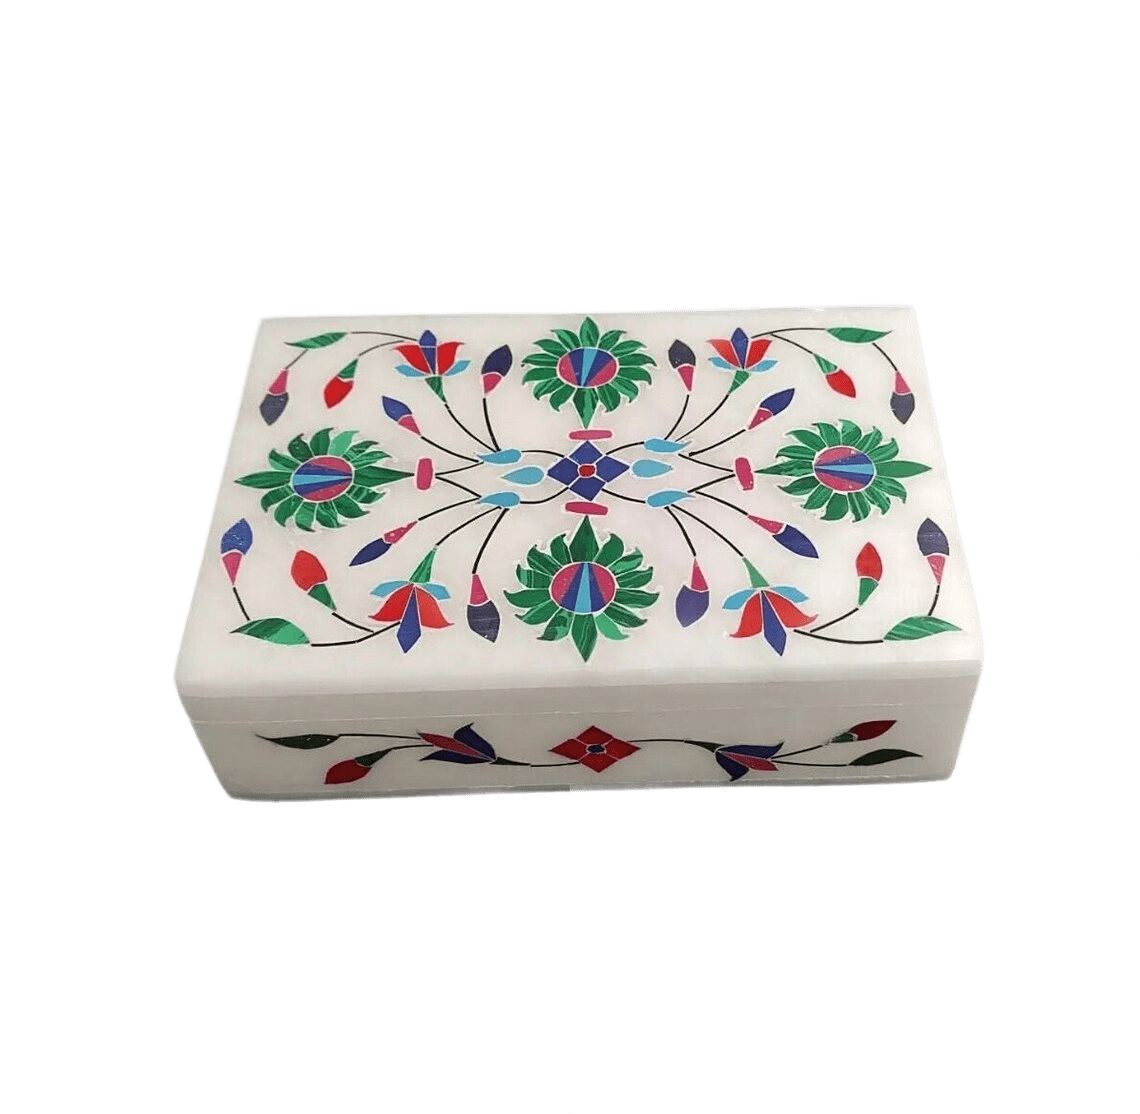 Handmade marble jewelry box